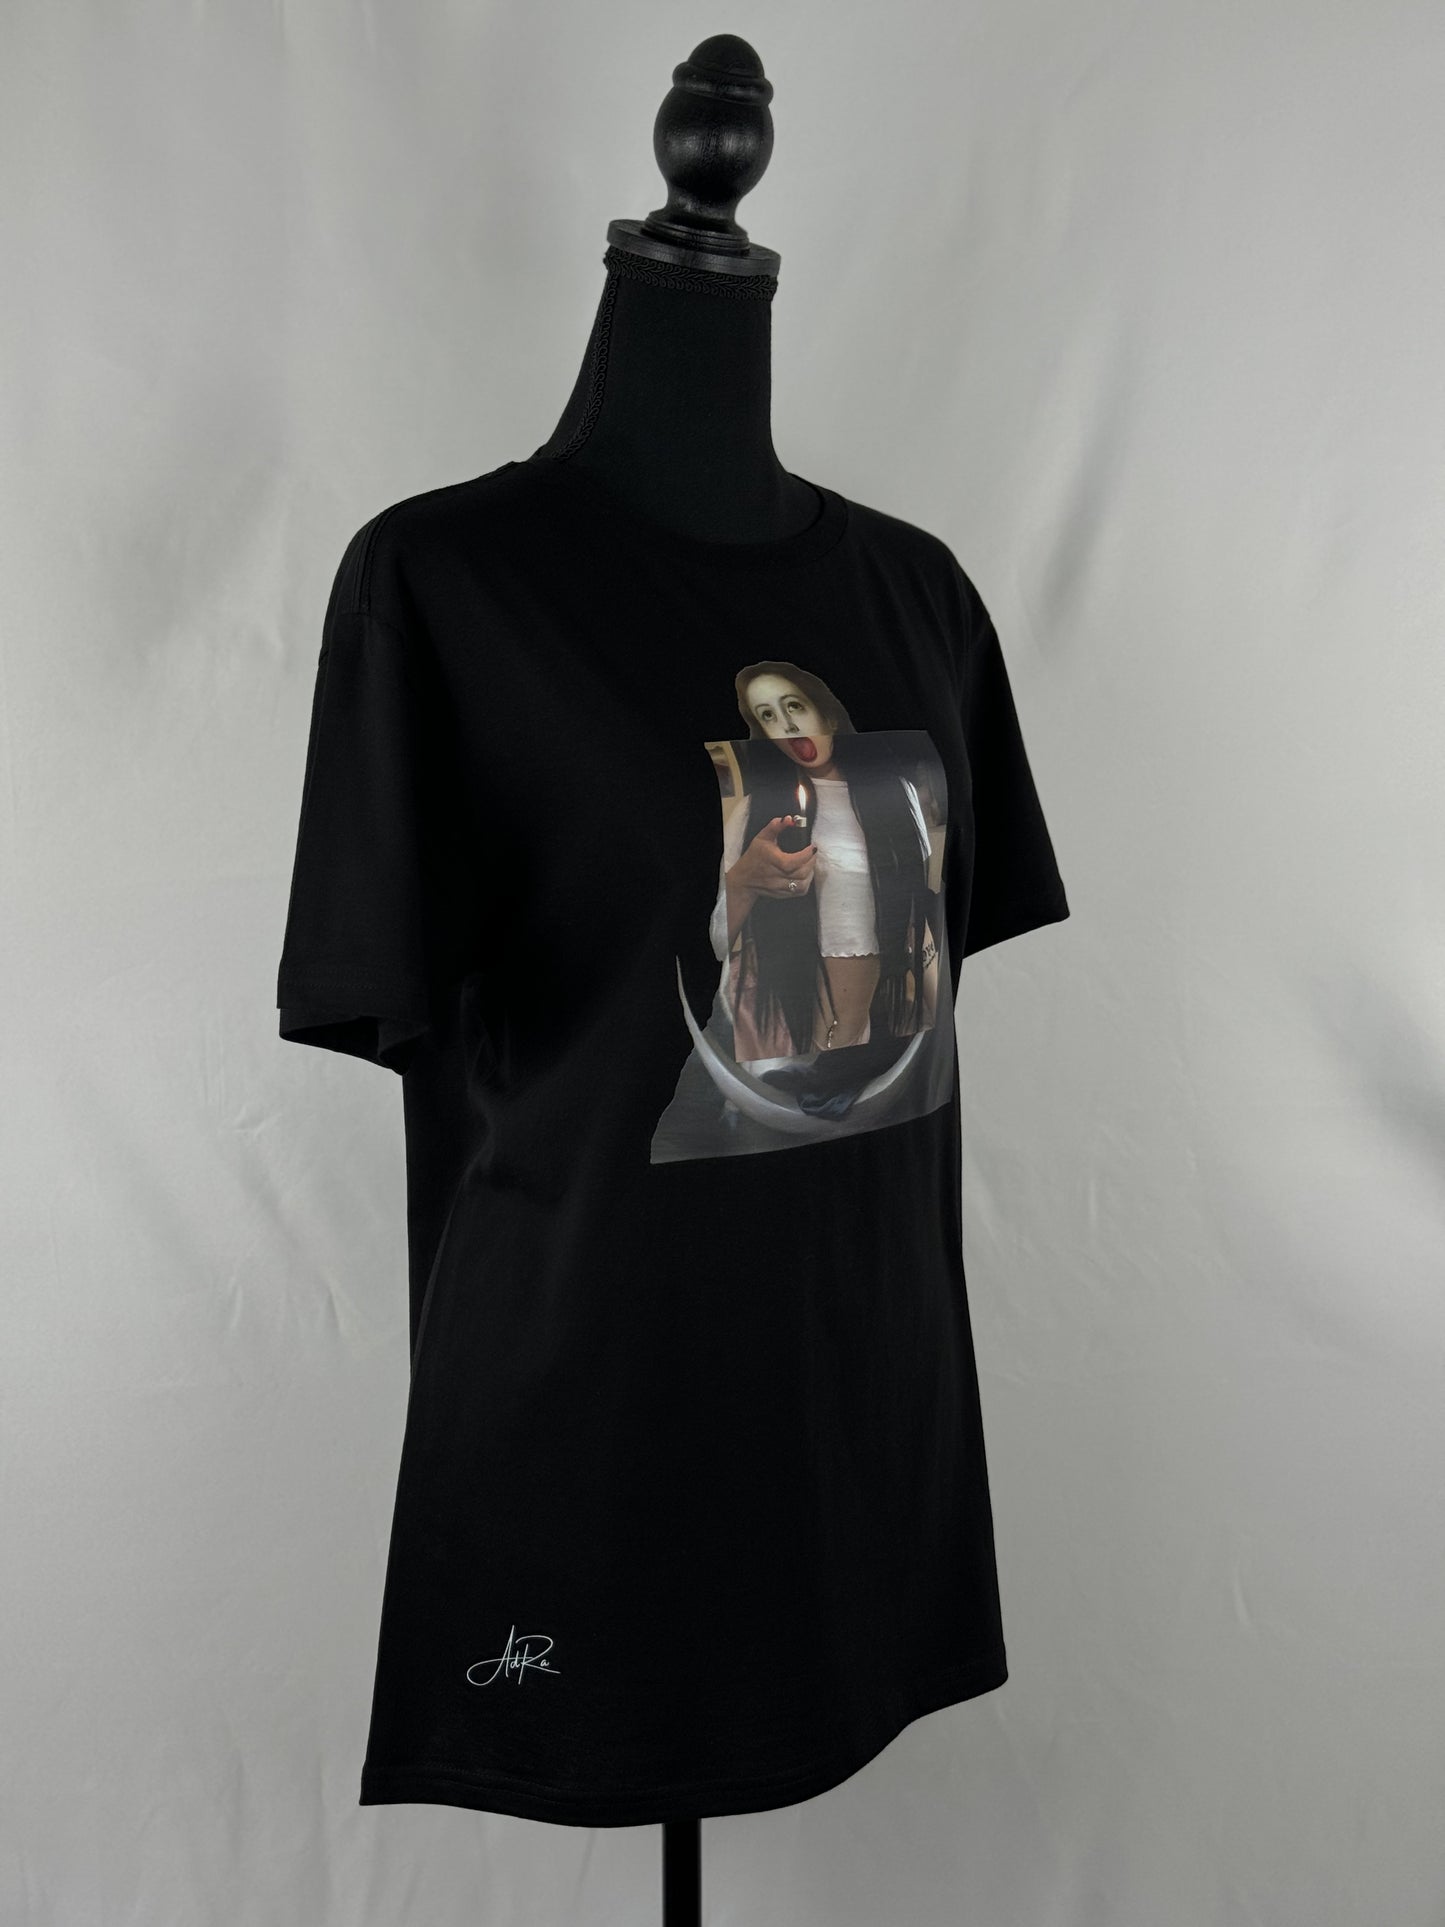 Contemporary Mona Lisa Graphic T-Shirt | AdRa Apparel